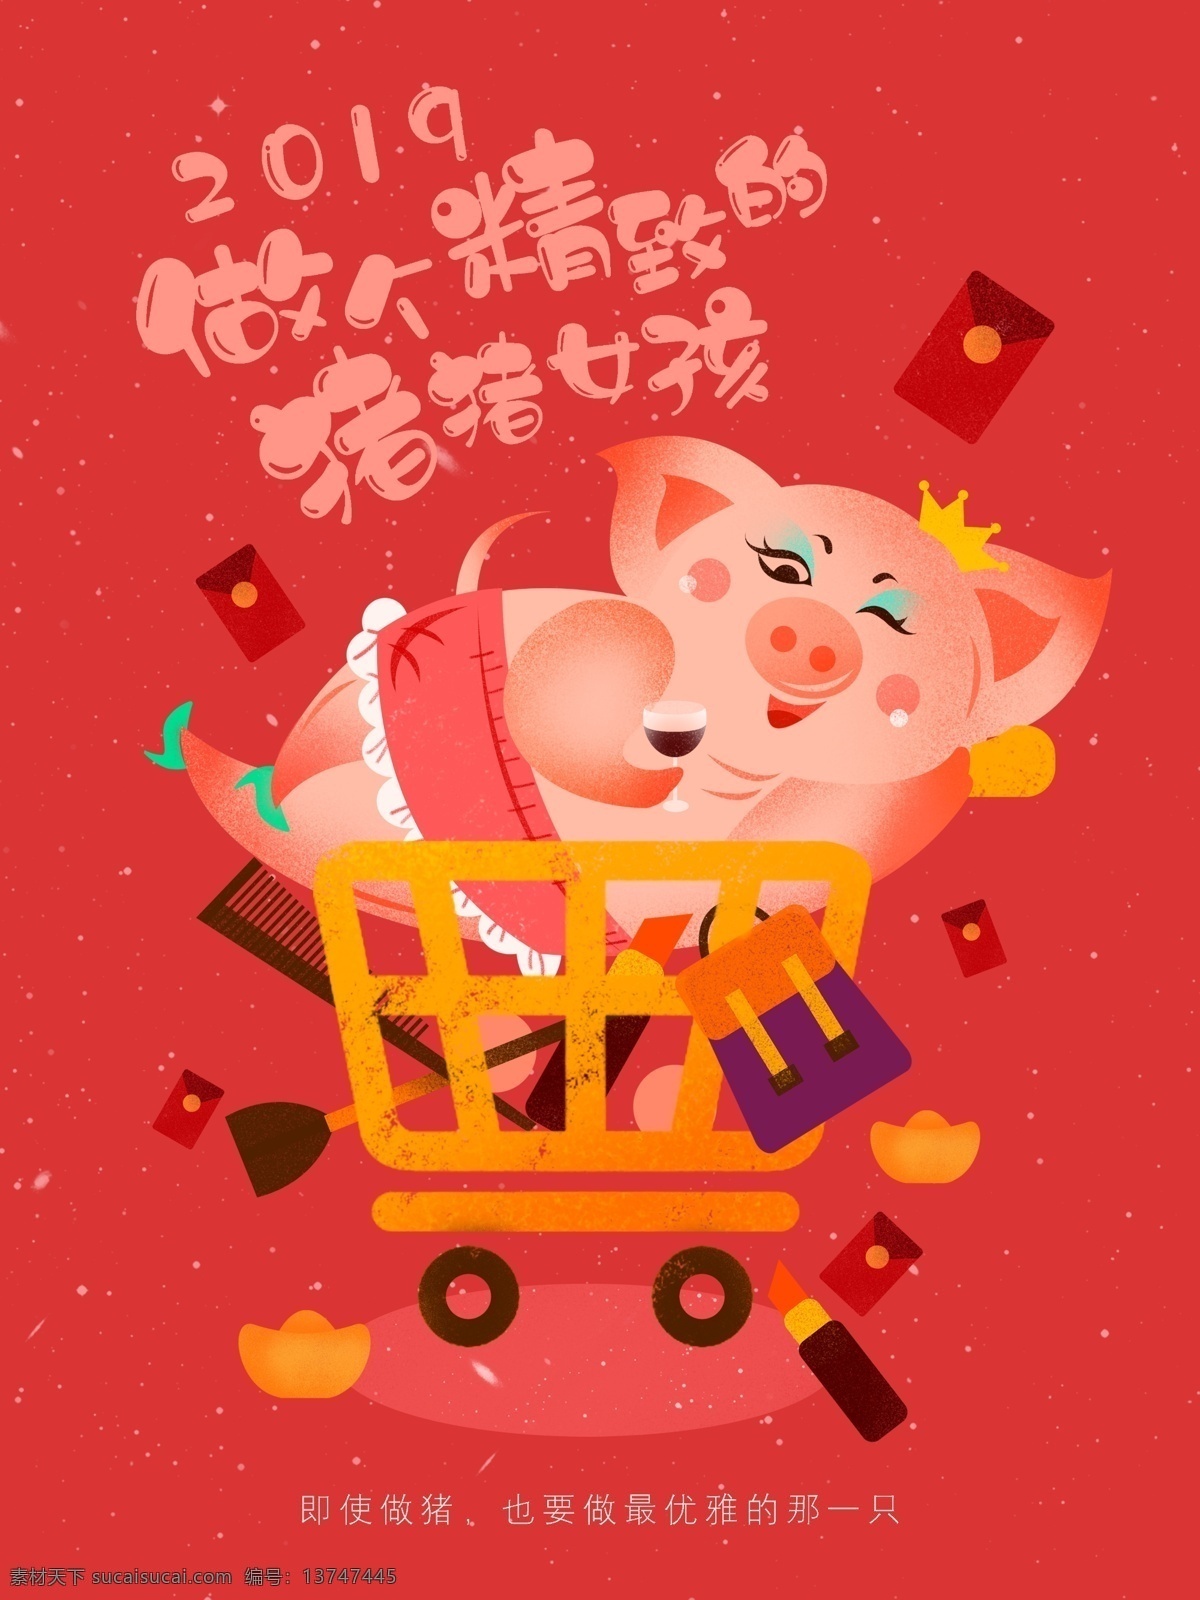 2019 猪年 猪 女孩 购物 促销 手绘 插画 海报 清新 化妆品 卡通 可爱 复古 原创